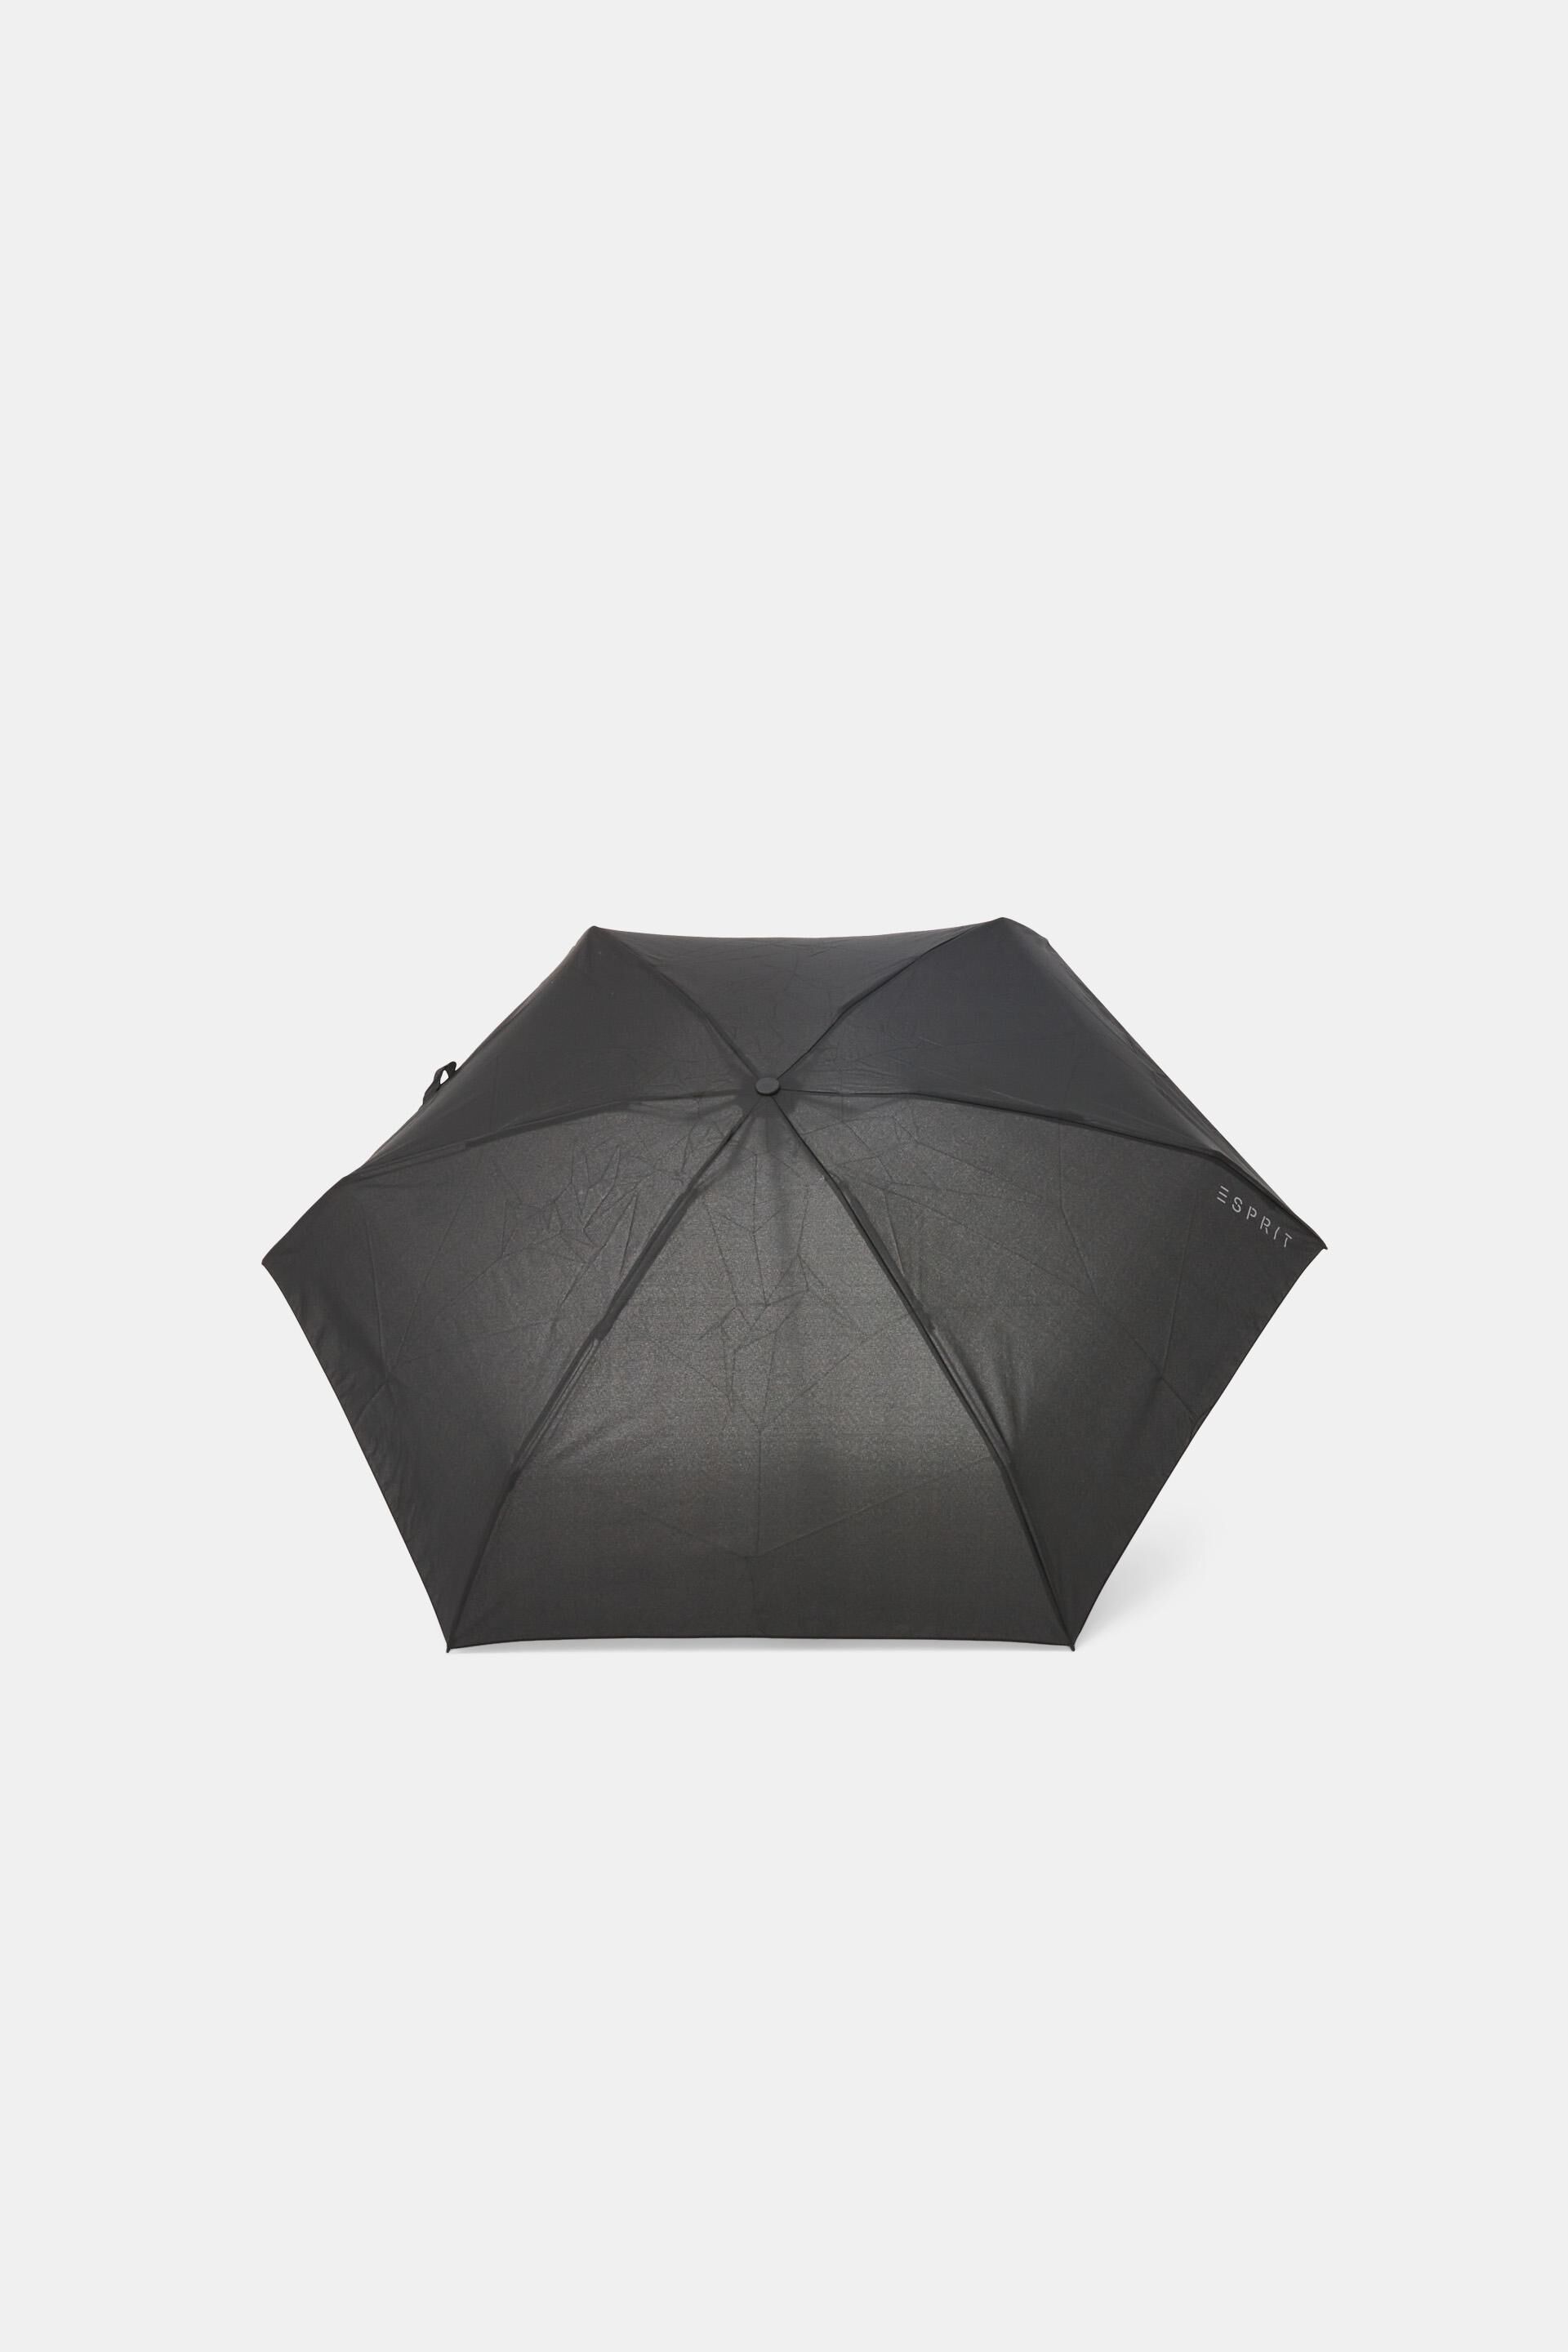 Esprit Online Store Plain mini pocket umbrella